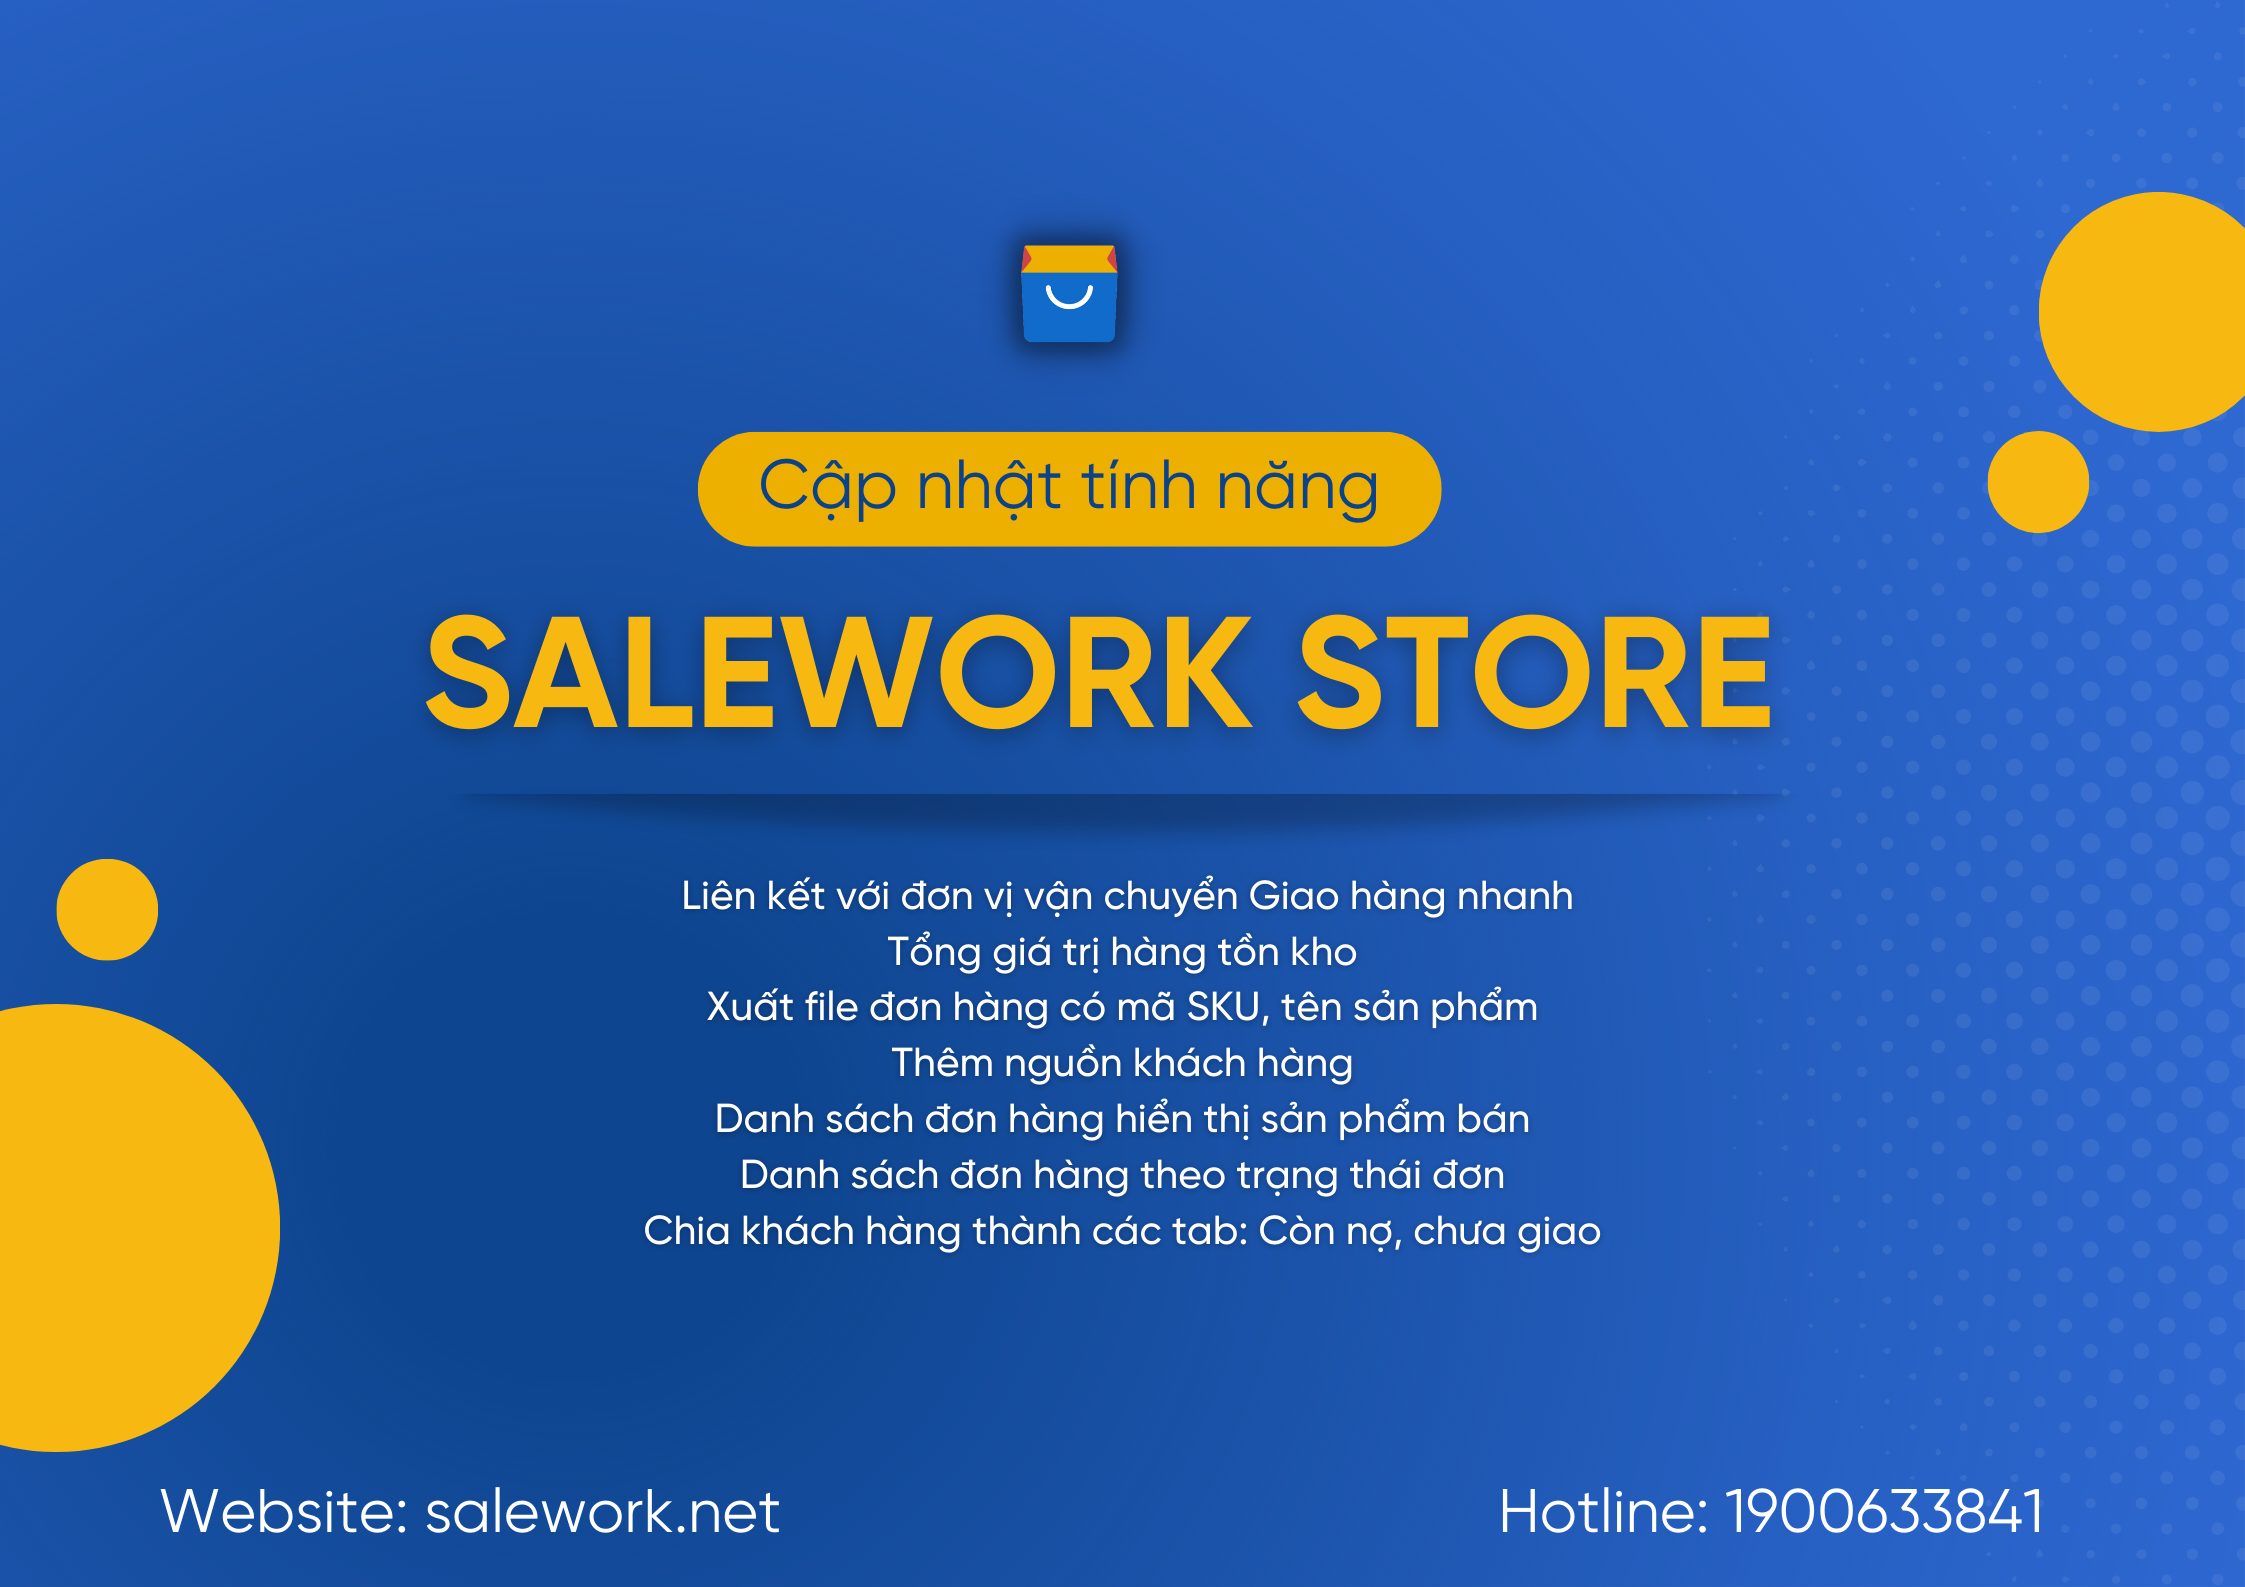 [ Thông báo] Salework Store cập nhật phần mềm - 95